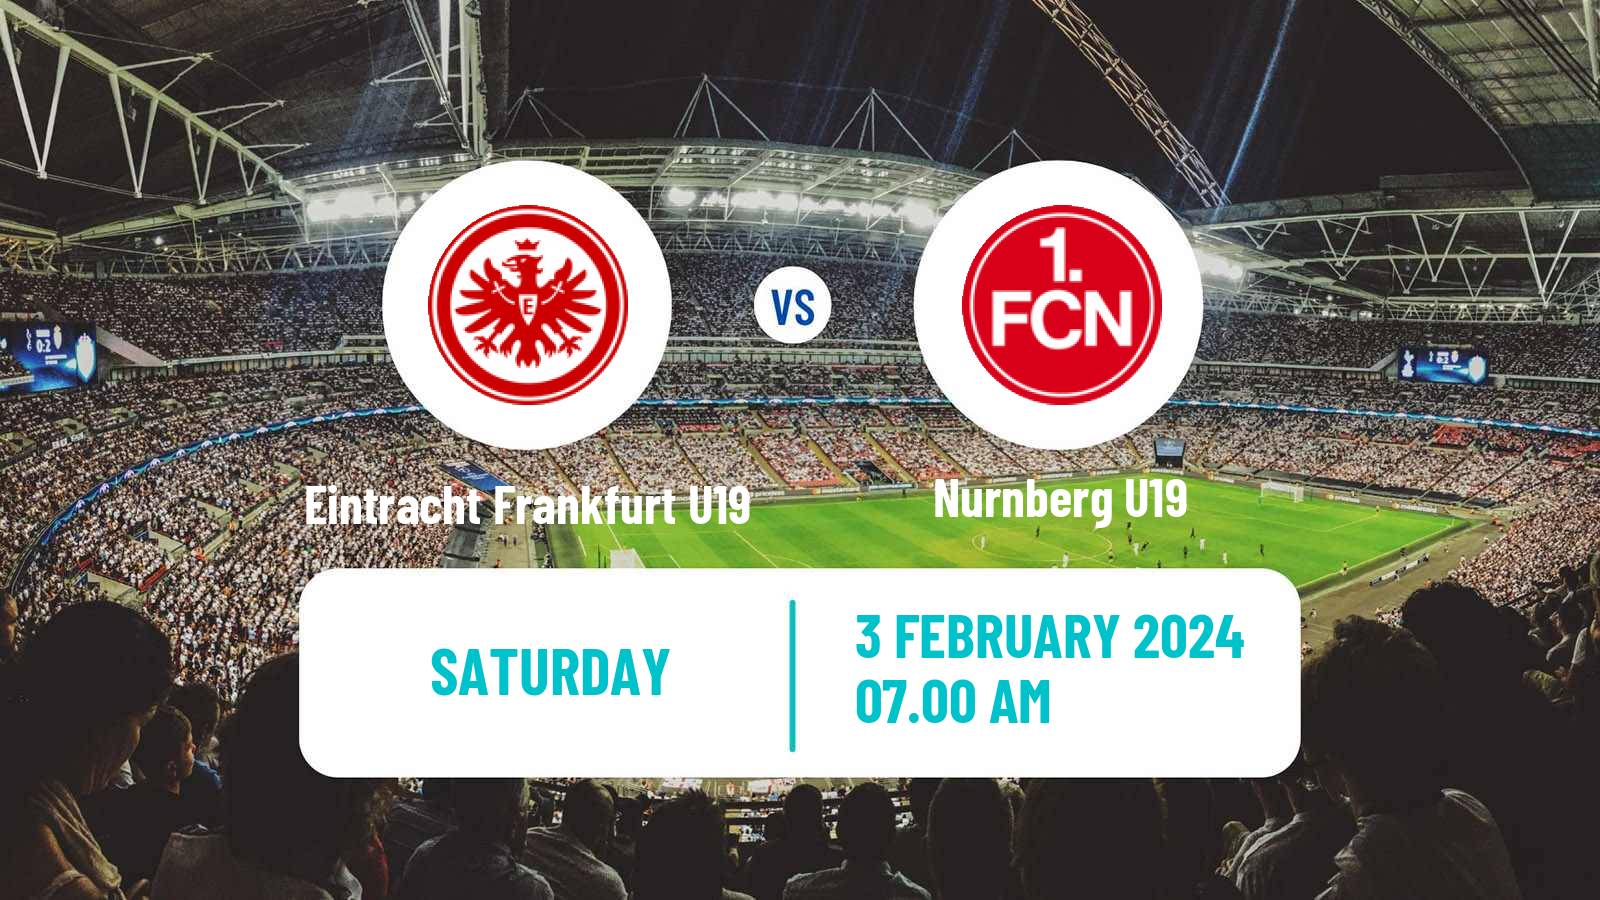 Soccer German Junioren Bundesliga South Eintracht Frankfurt U19 - Nurnberg U19